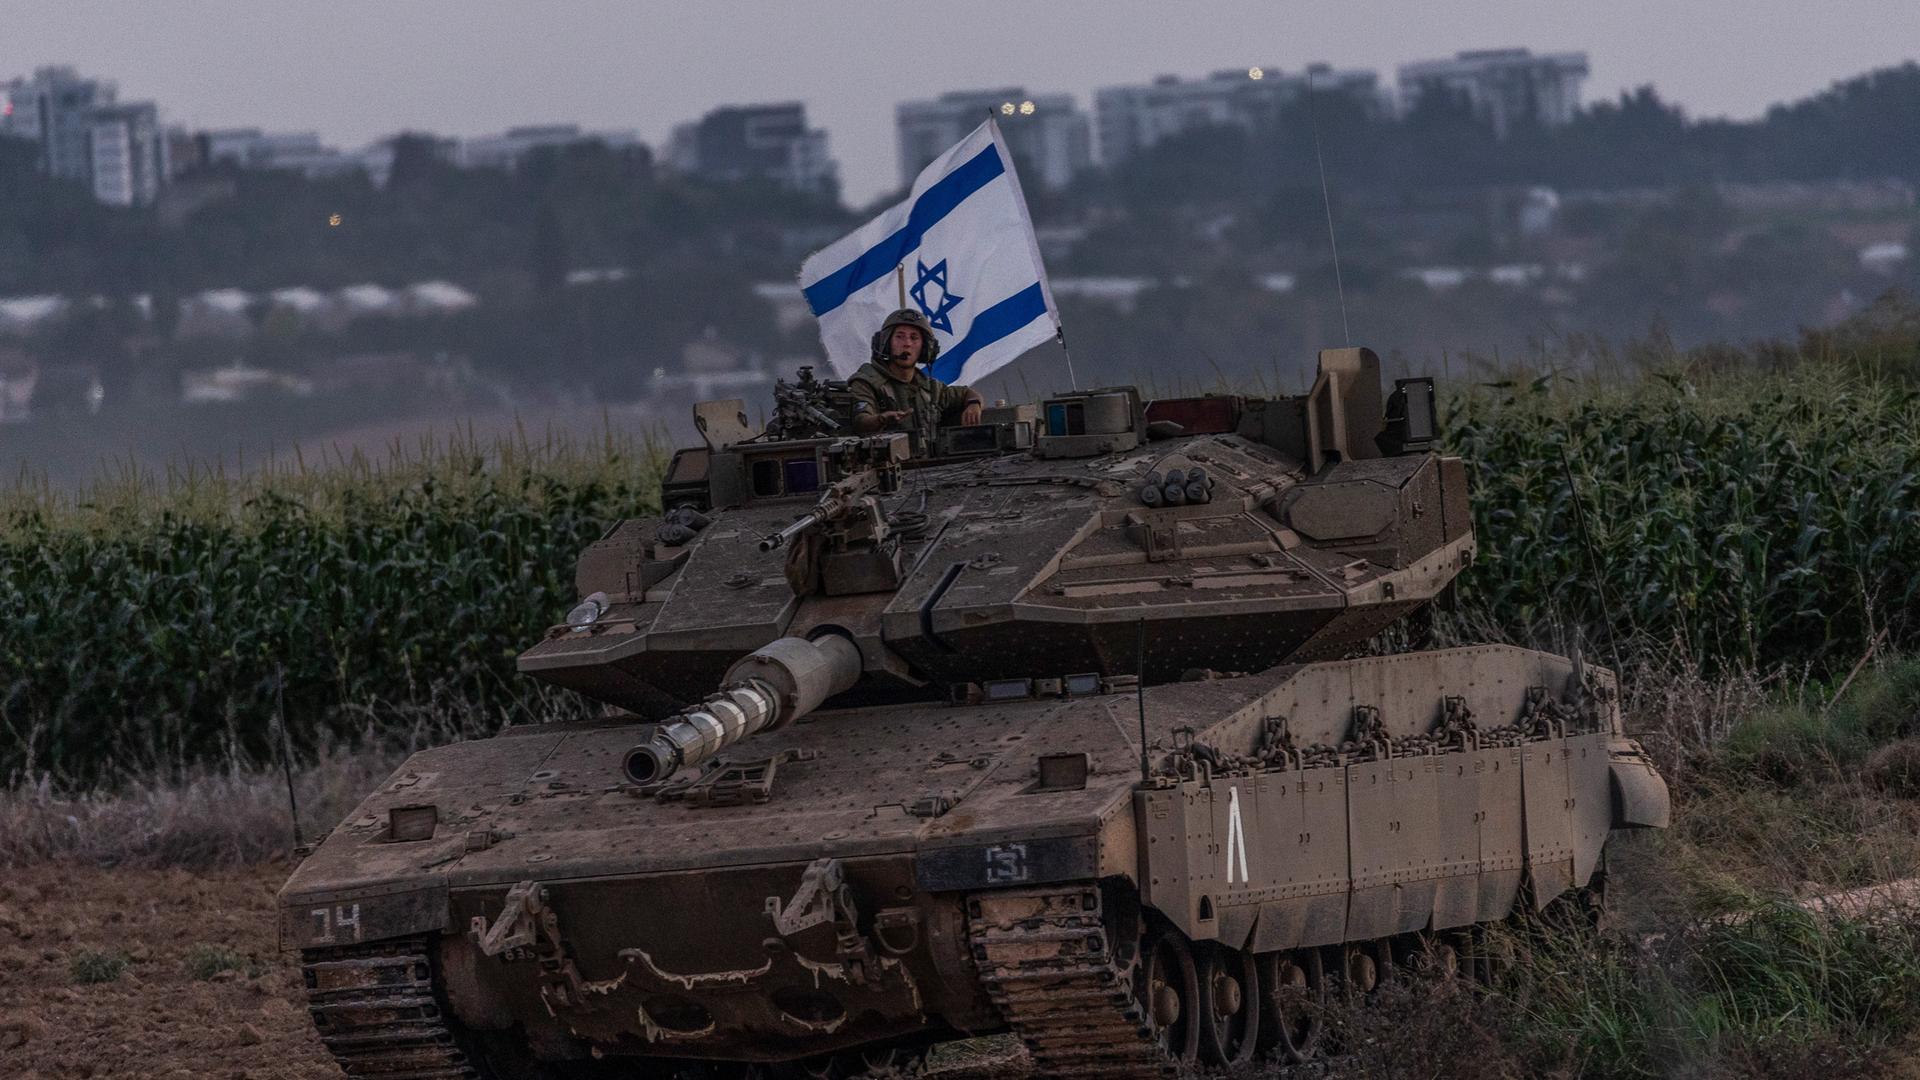 Ein Panzer, daraus schaut ein Soldat mit israelischer Flagge. Im Hintergrund ist besiedeltes Gebiet zu erkennen. 